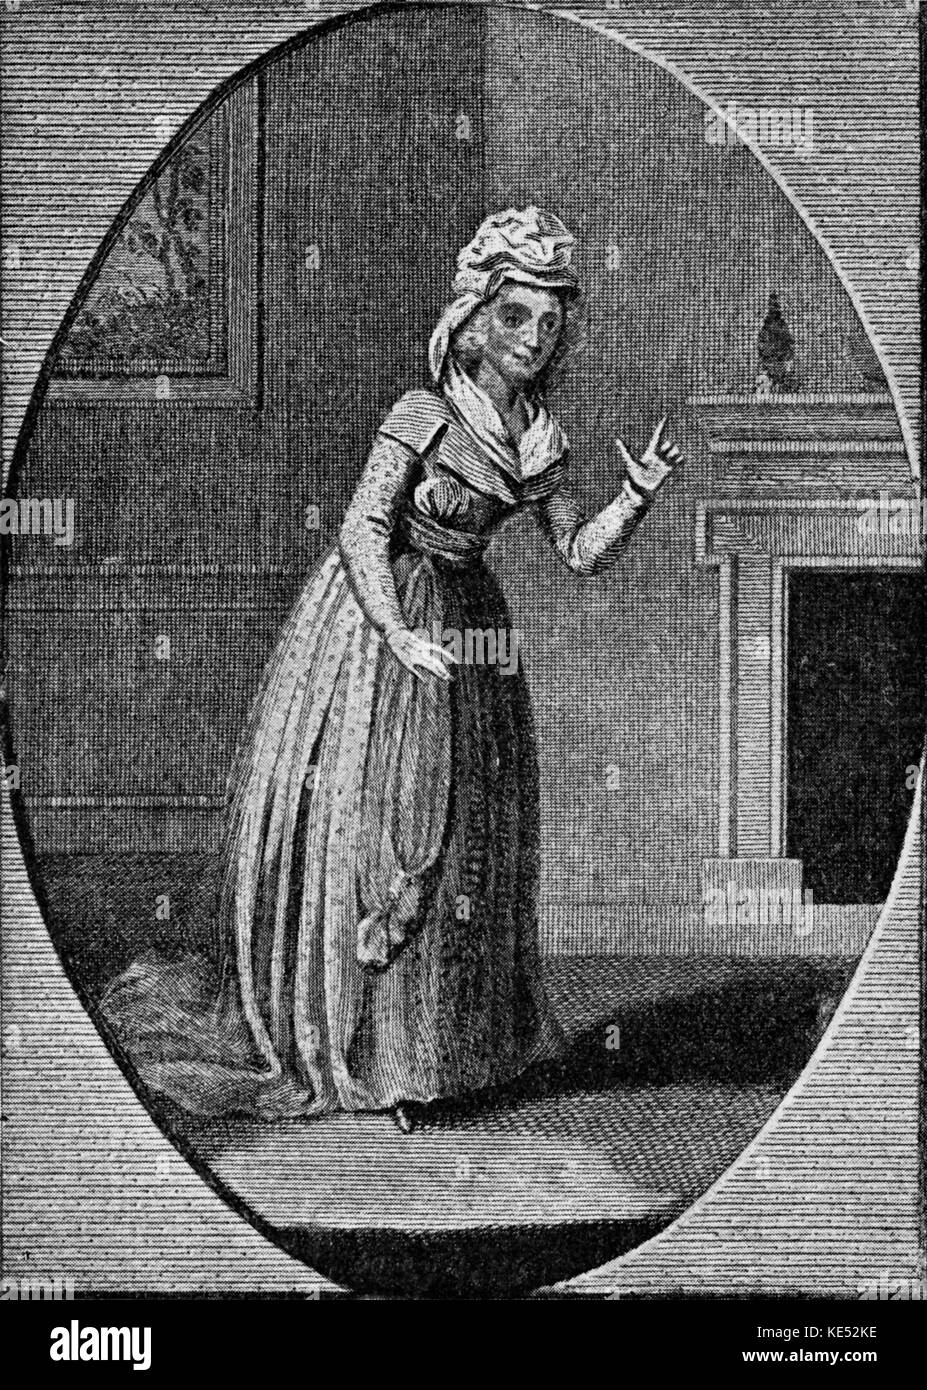 'The Beggar's Opera" - "The Beggar's Opera" - opéra ballade/pièce satirique de John Gay. Sous-titre suivant : 'Mrs Crouch comme 'Polly'.' JG : dramaturge et poète anglais, 16 septembre 1685 - 4 décembre 1732. Banque D'Images